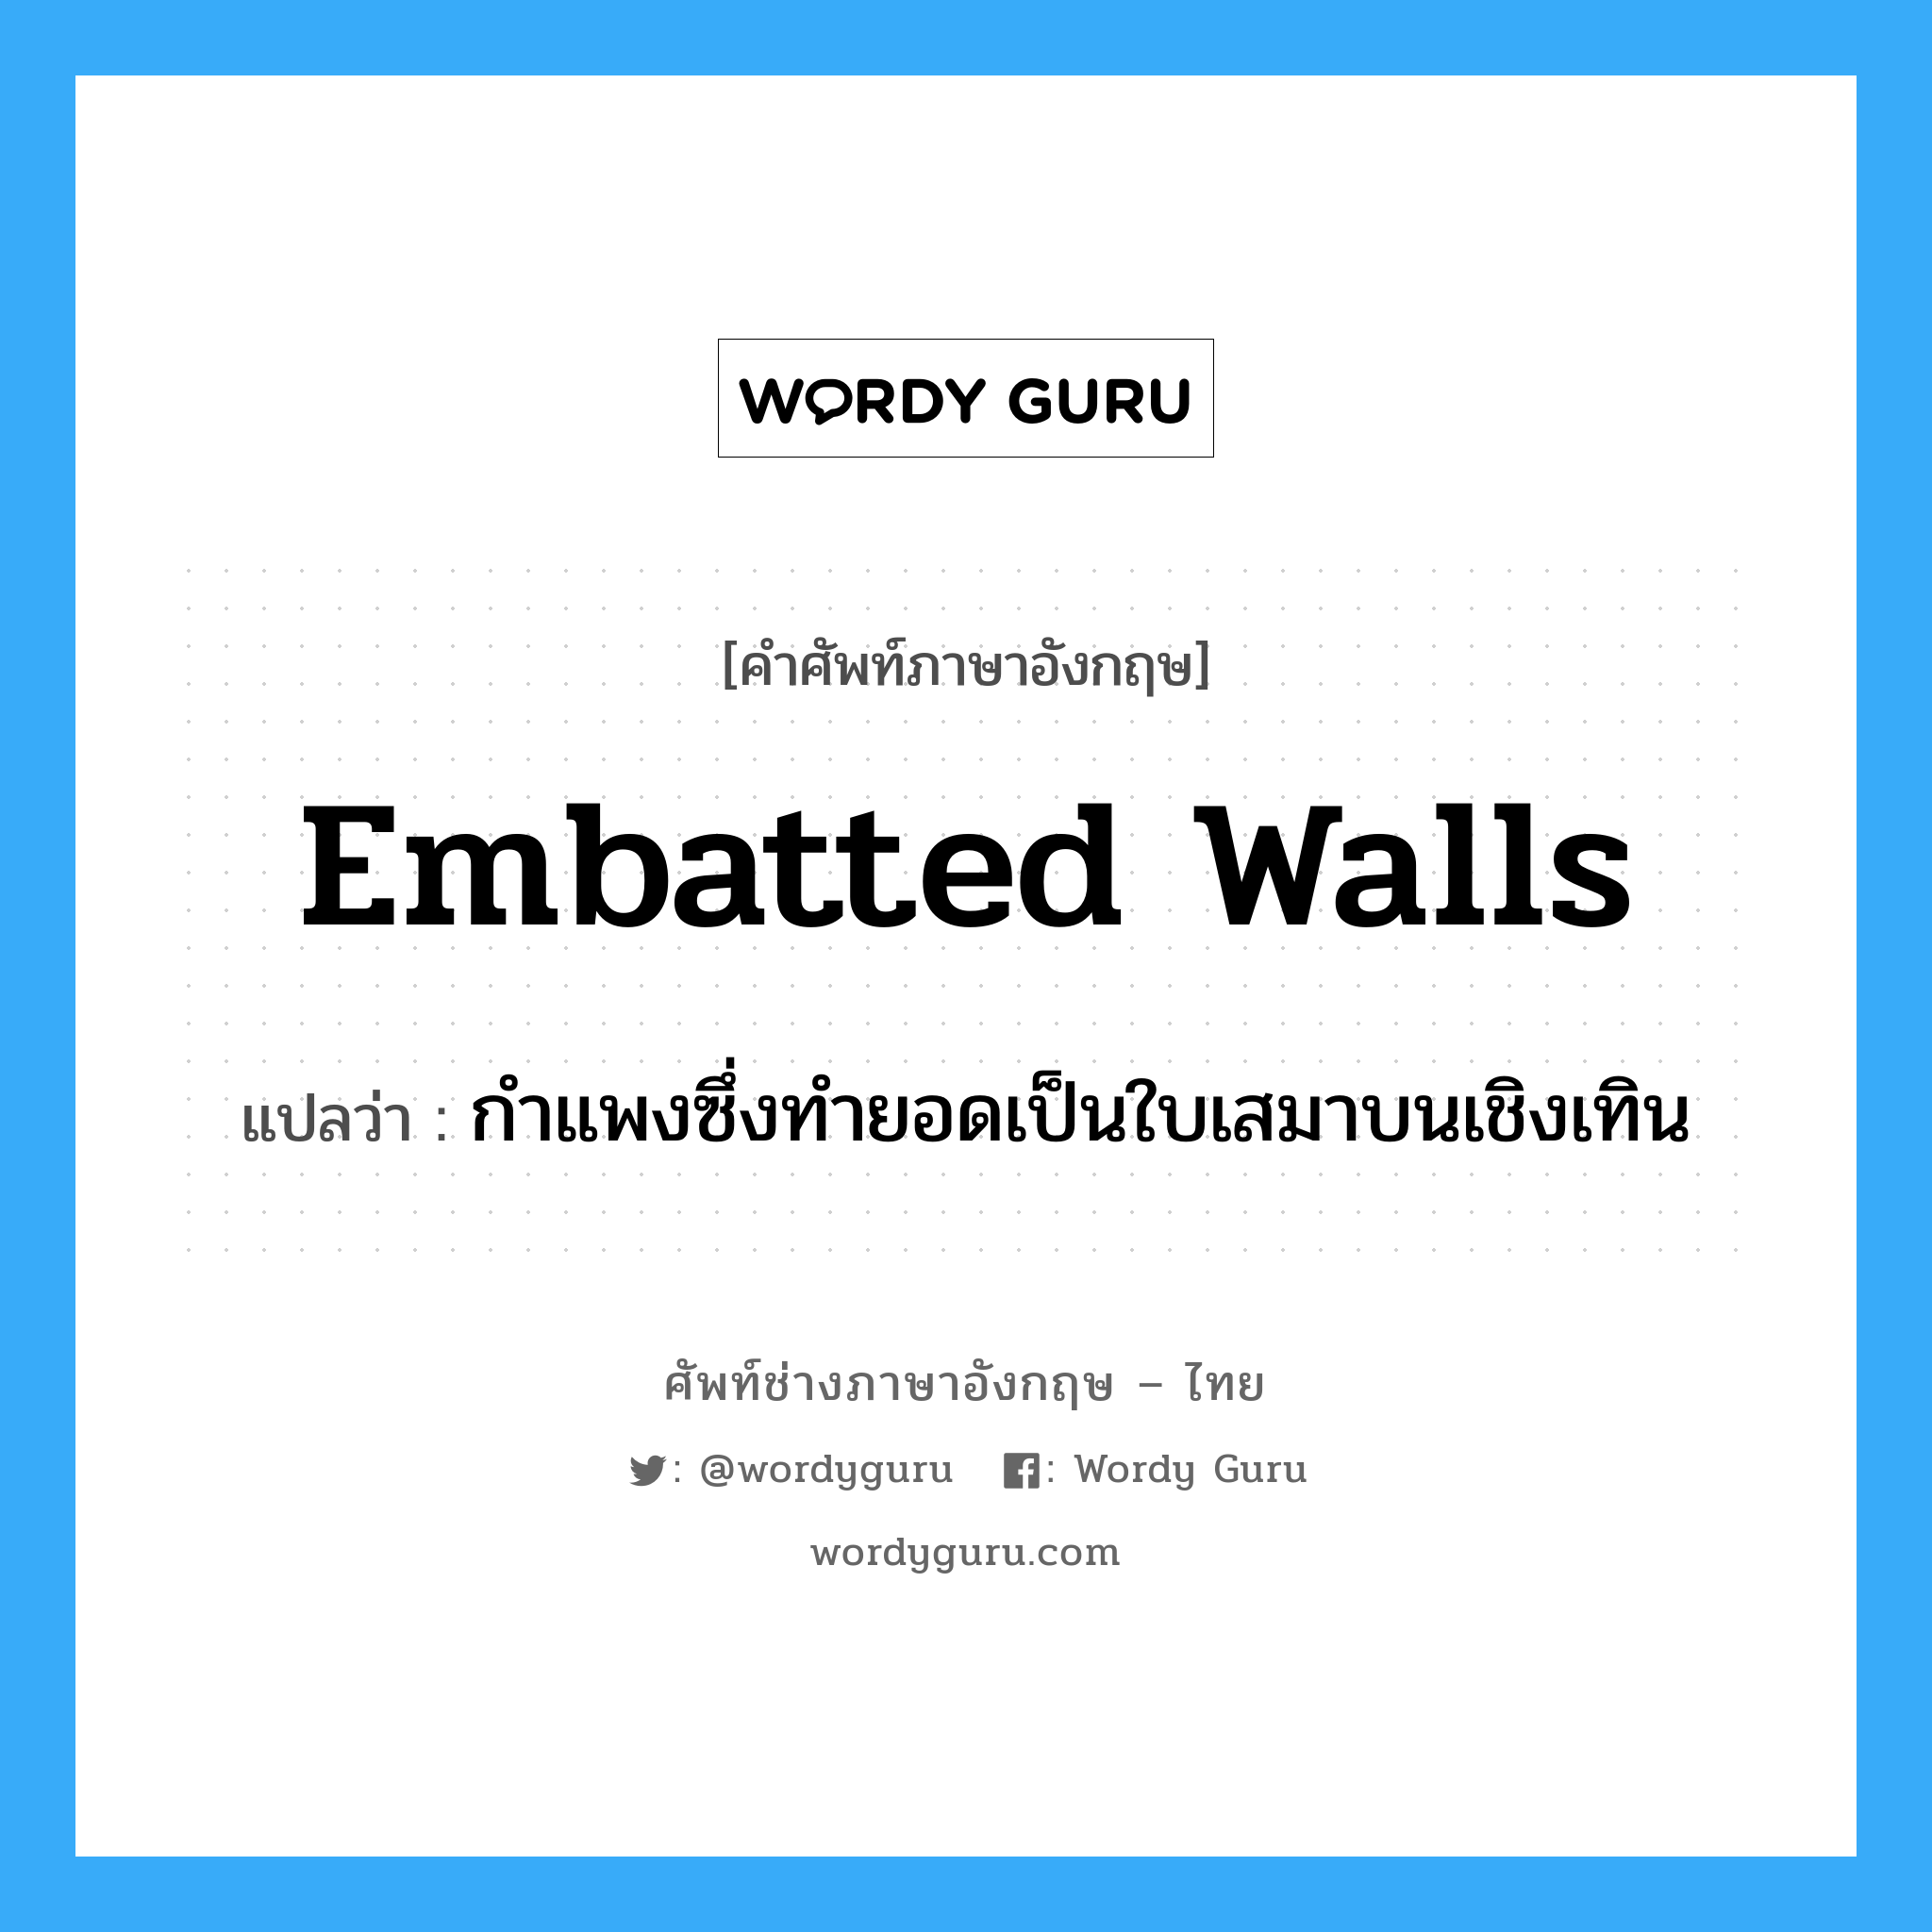 embatted walls แปลว่า?, คำศัพท์ช่างภาษาอังกฤษ - ไทย embatted walls คำศัพท์ภาษาอังกฤษ embatted walls แปลว่า กำแพงซึ่งทำยอดเป็นใบเสมาบนเชิงเทิน